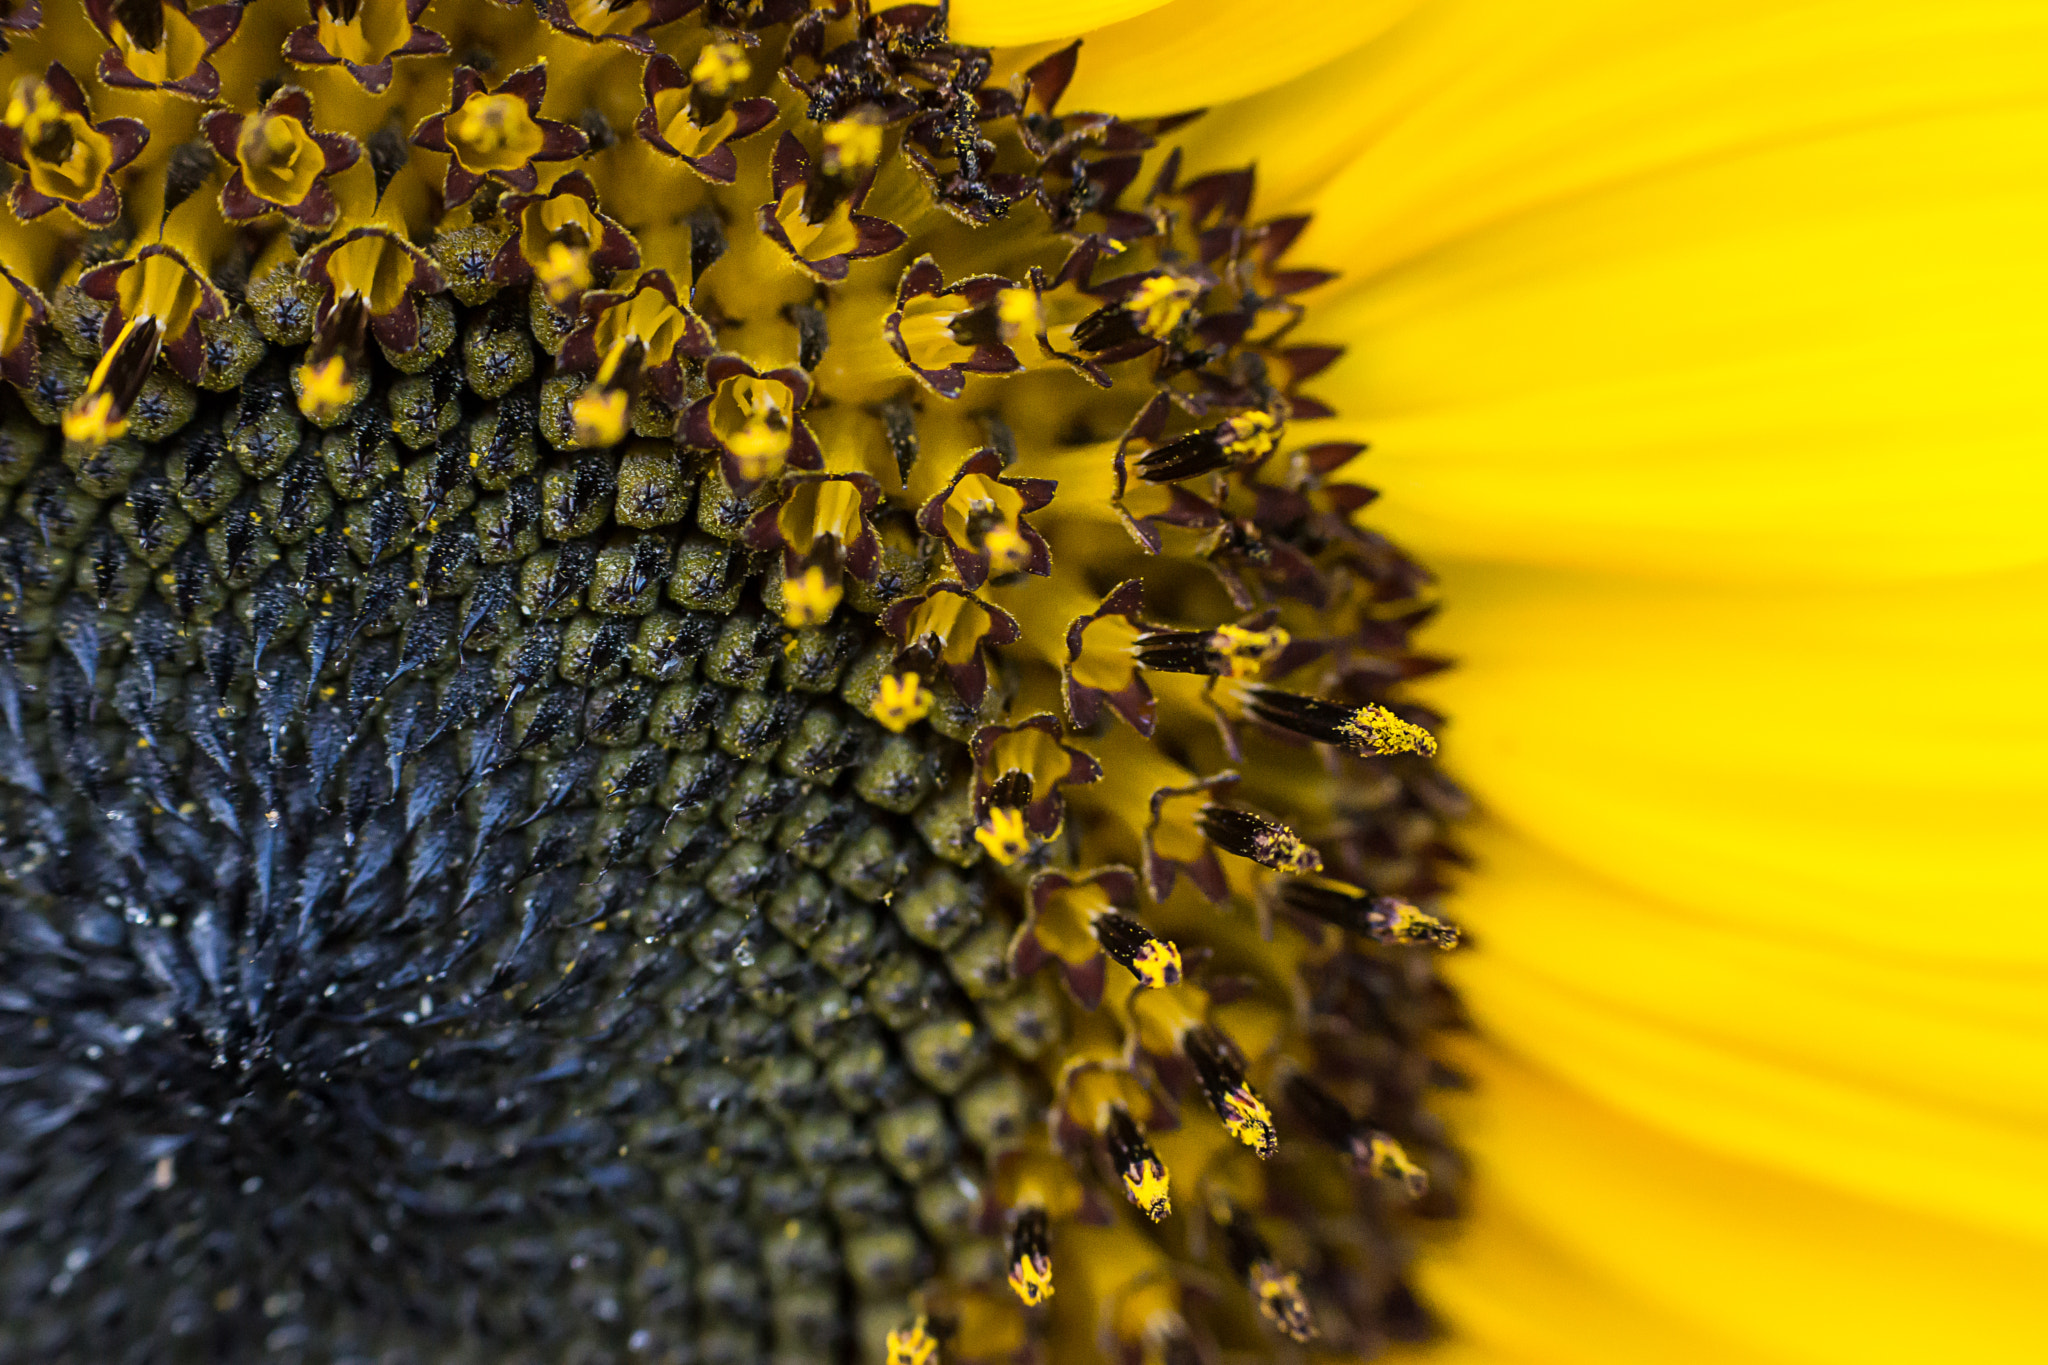 Sony SLT-A77 sample photo. Sunflower  photography